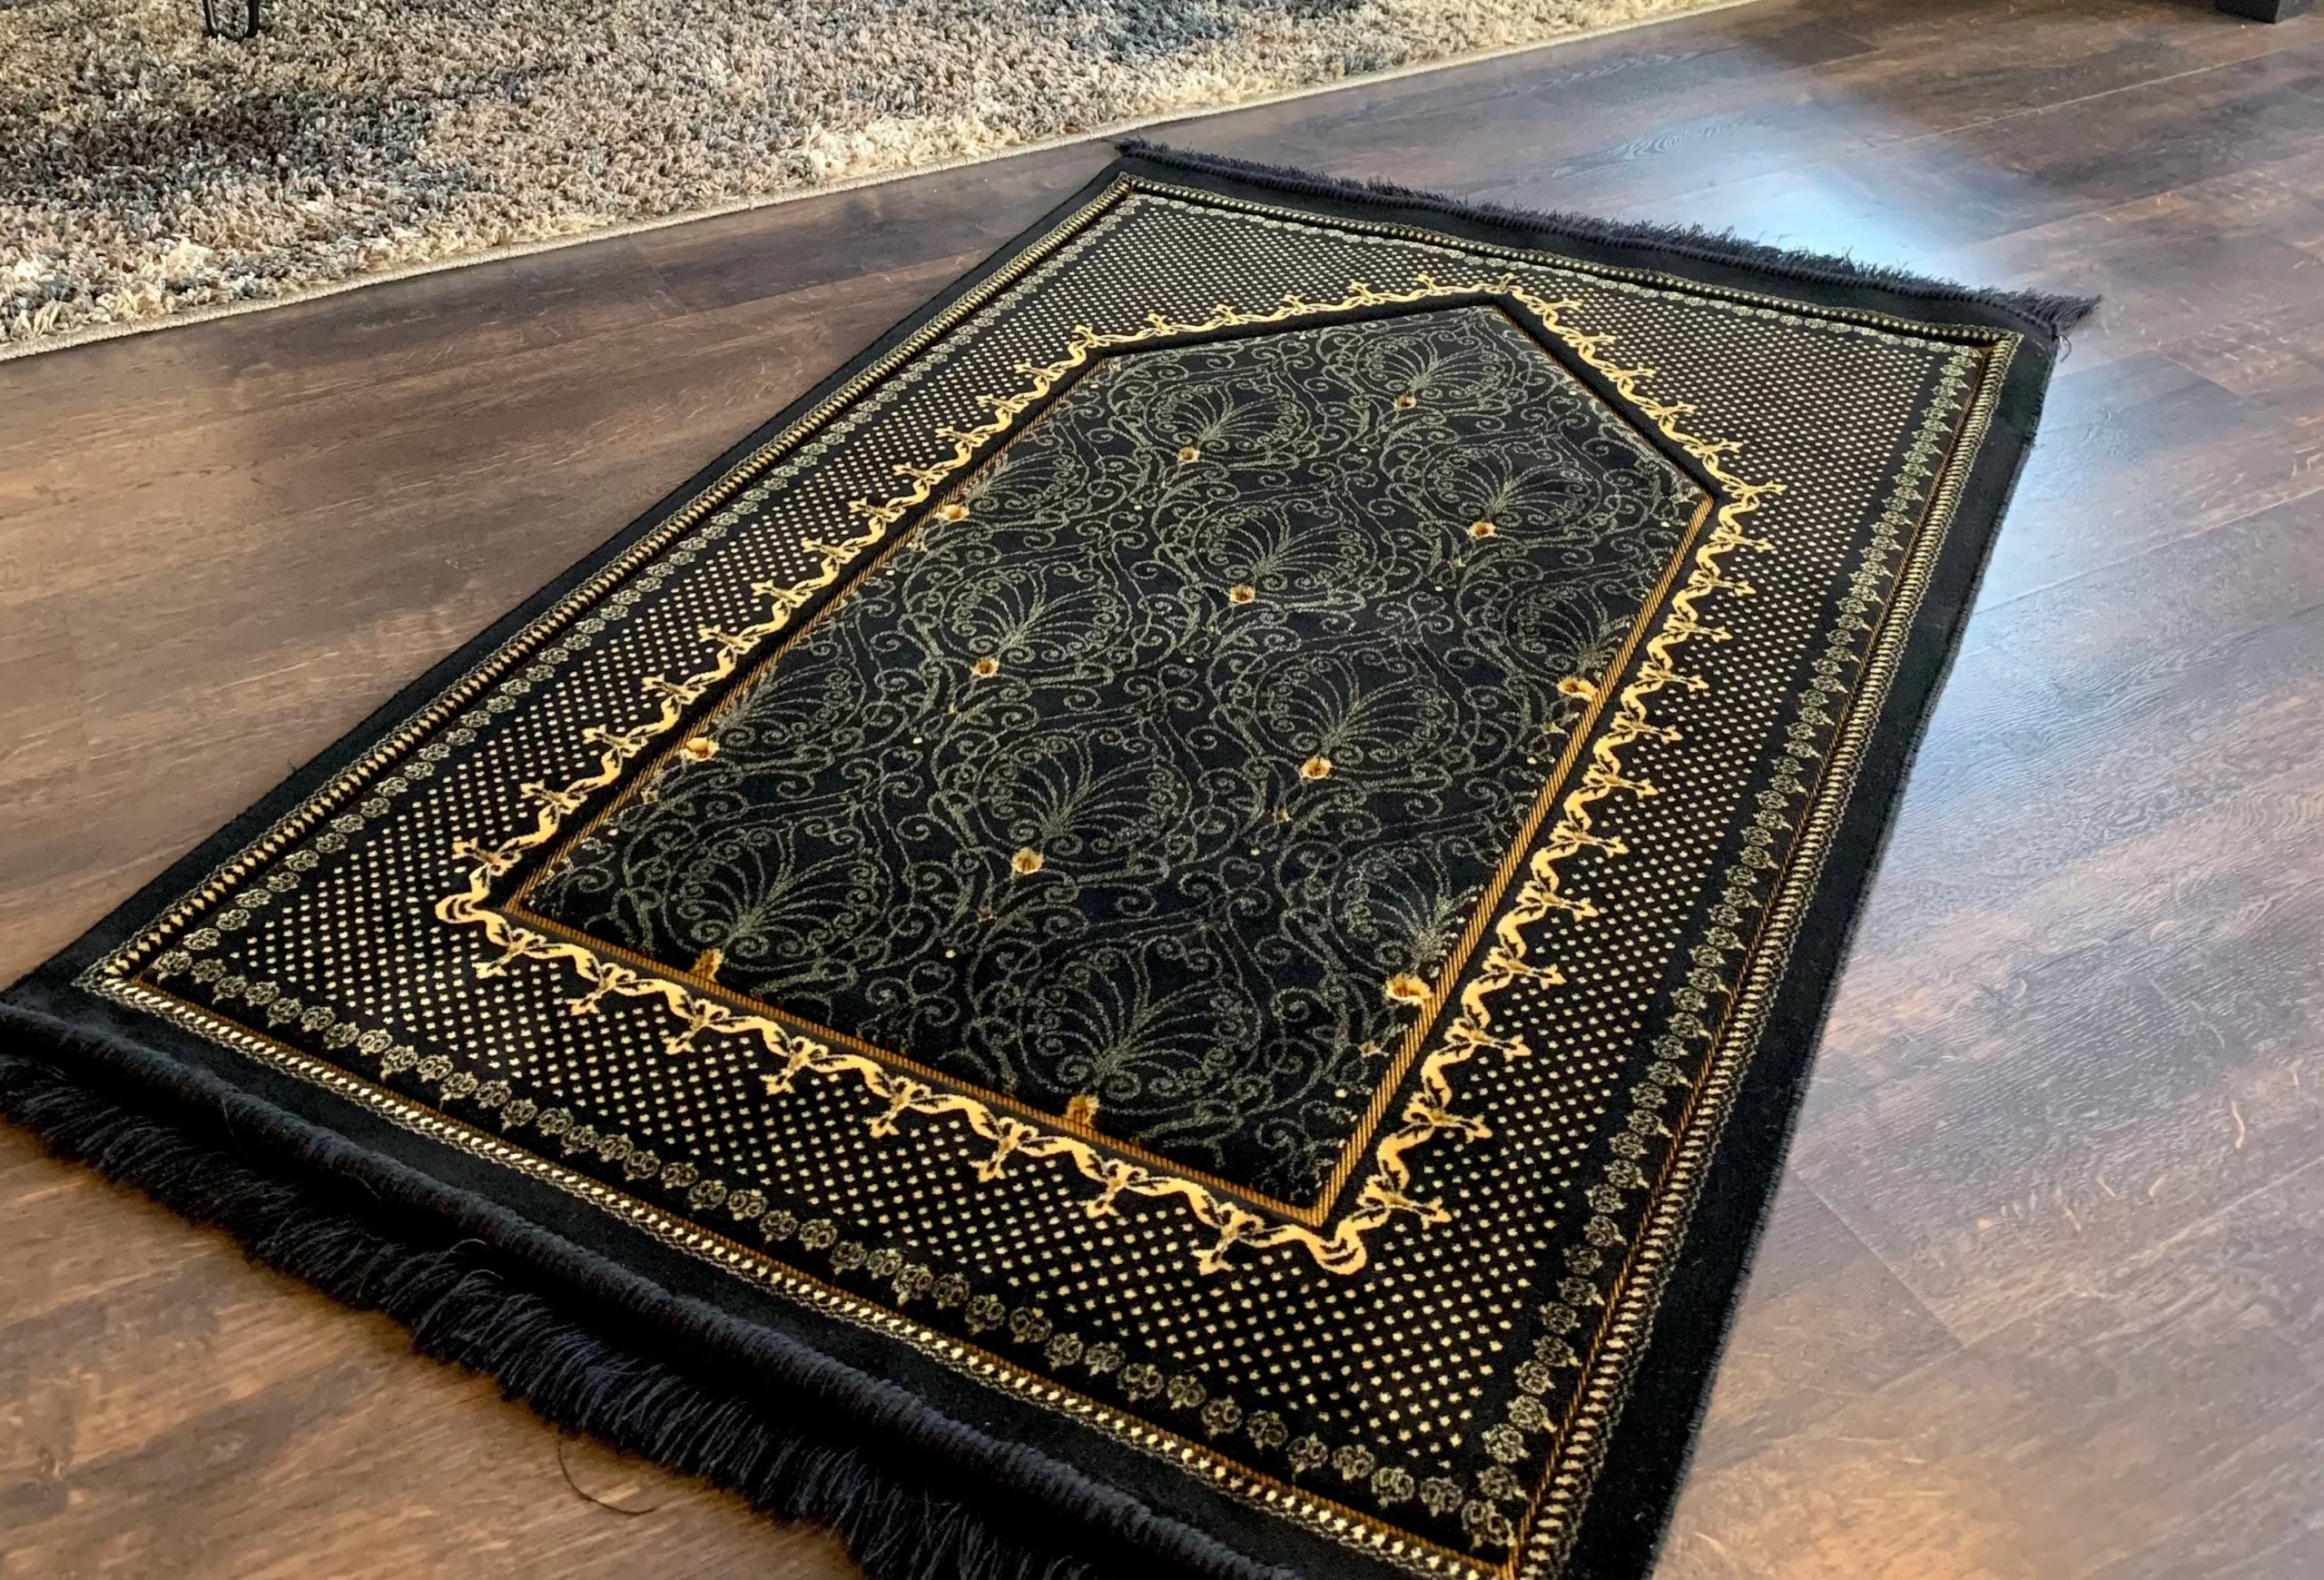 prayer mats